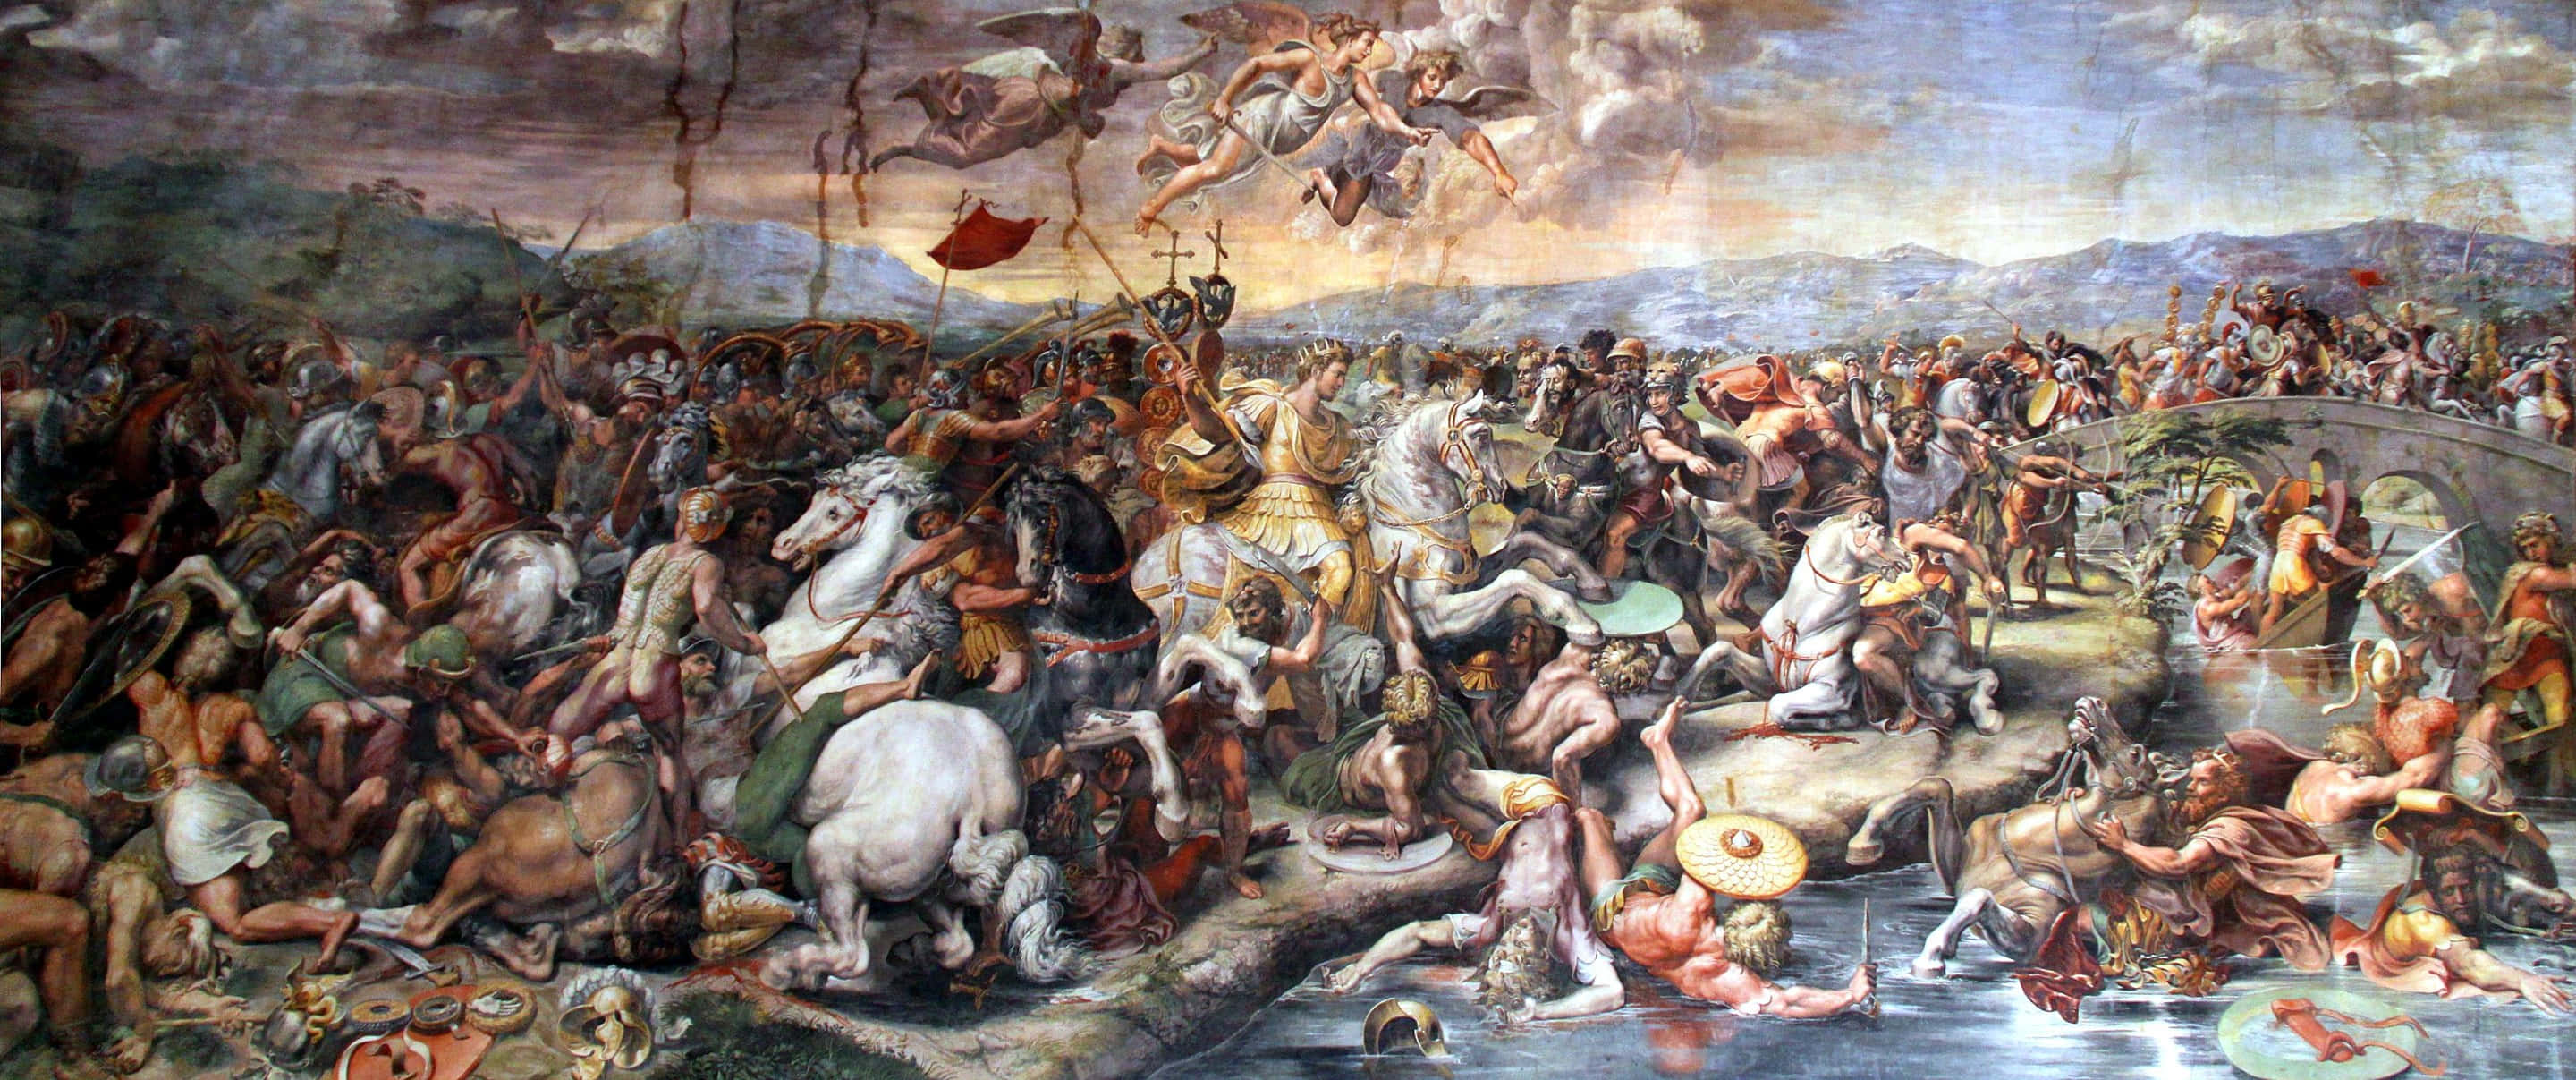 Italiian Renaissance Painting